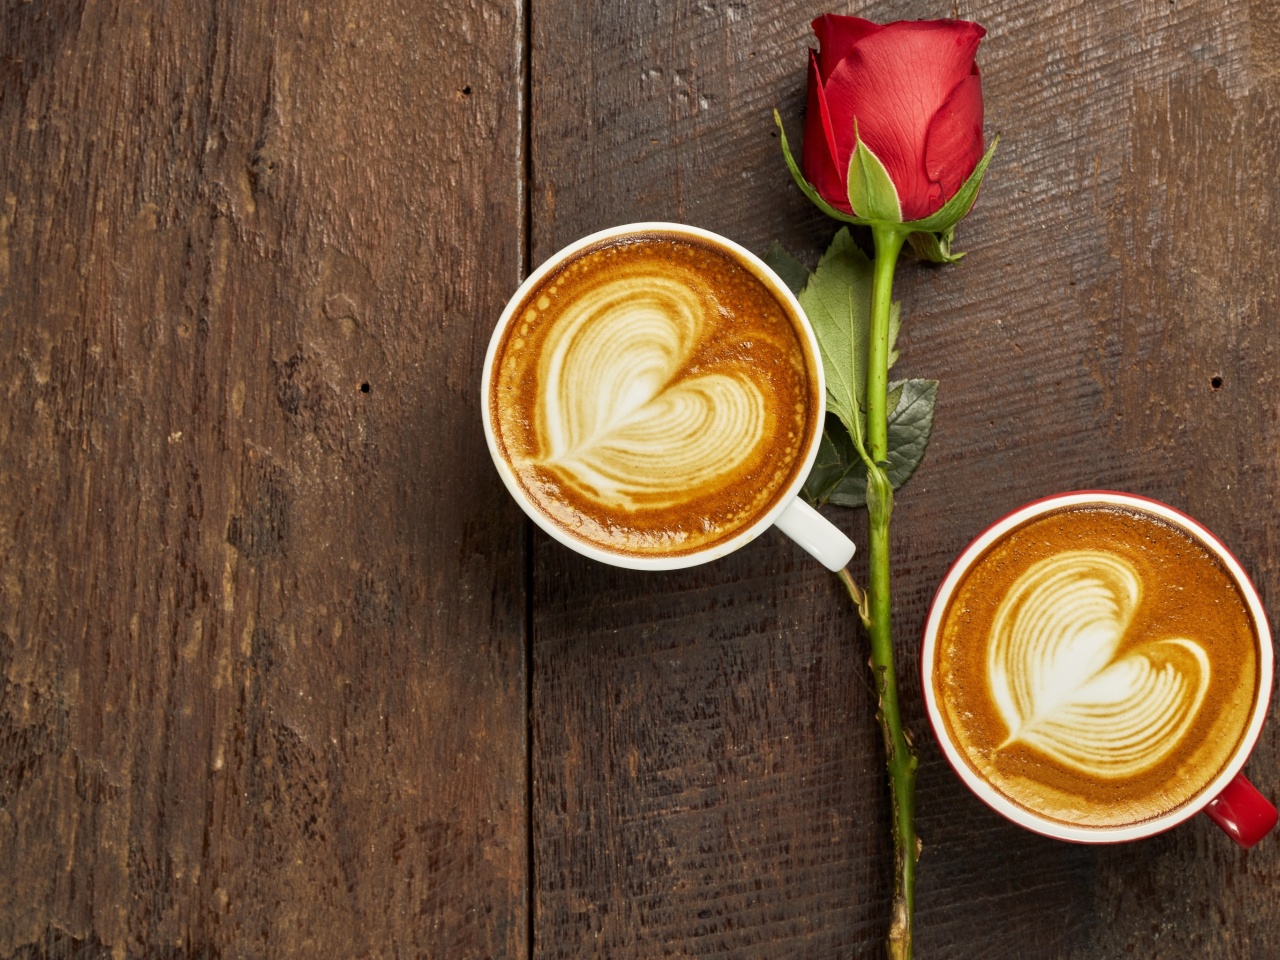 Обои Romantic Coffee and Rose 1280x960